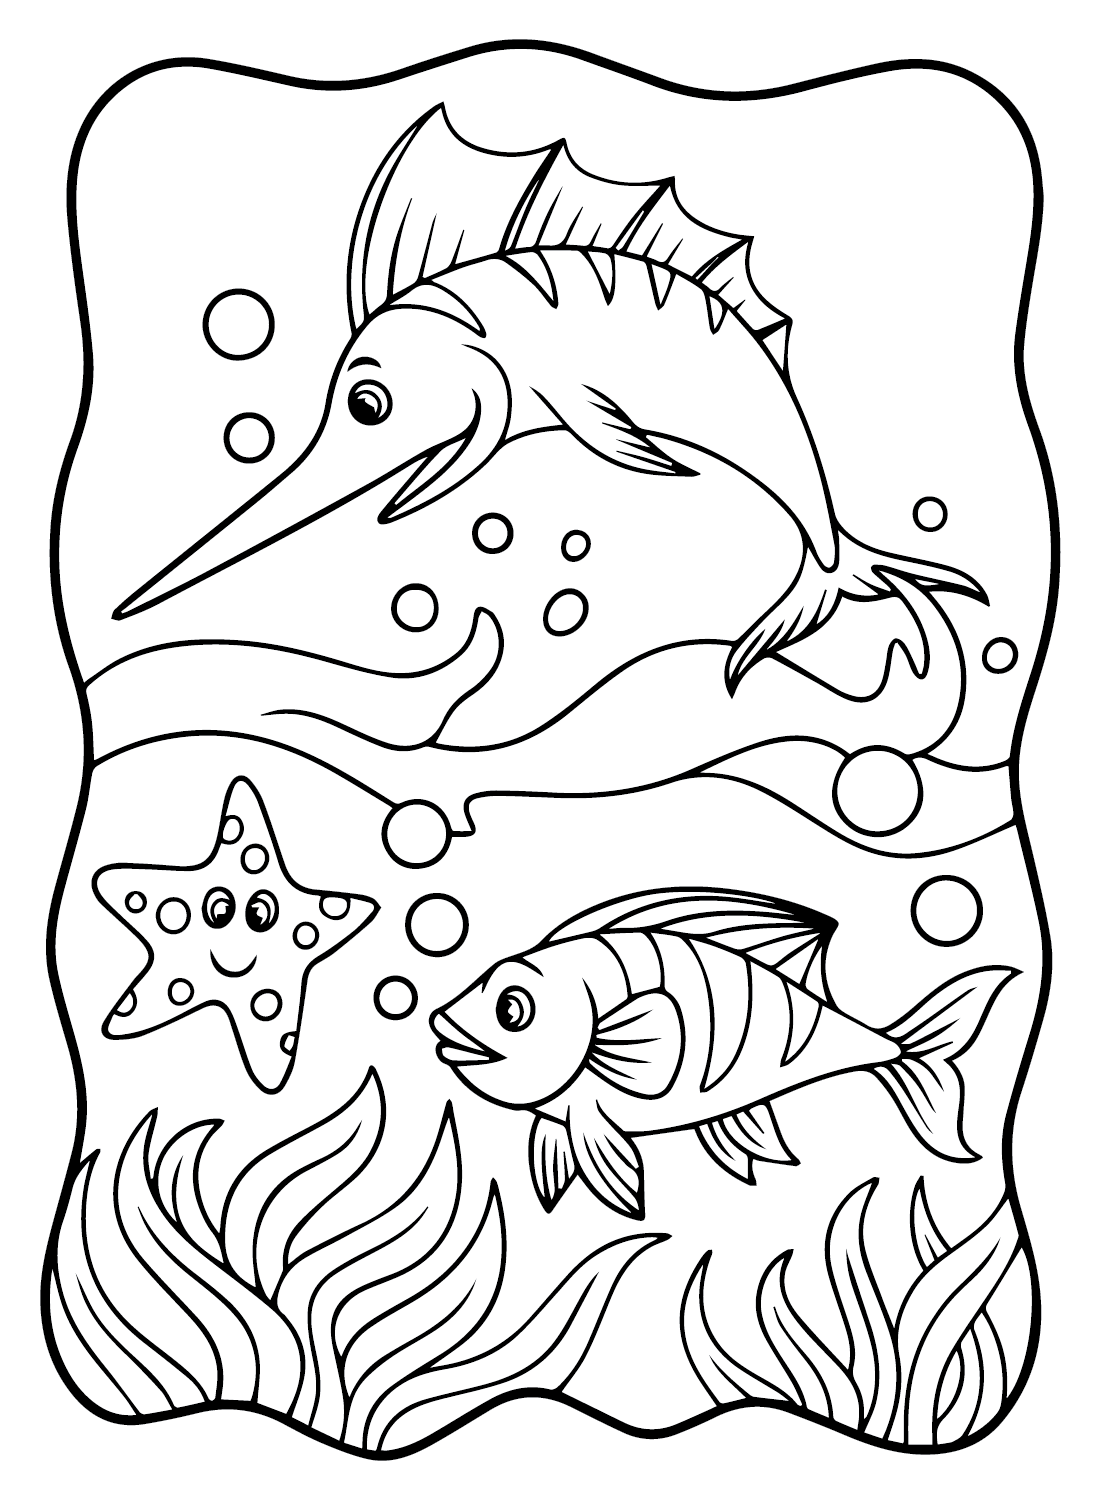 马林鱼 可从马林鱼打印